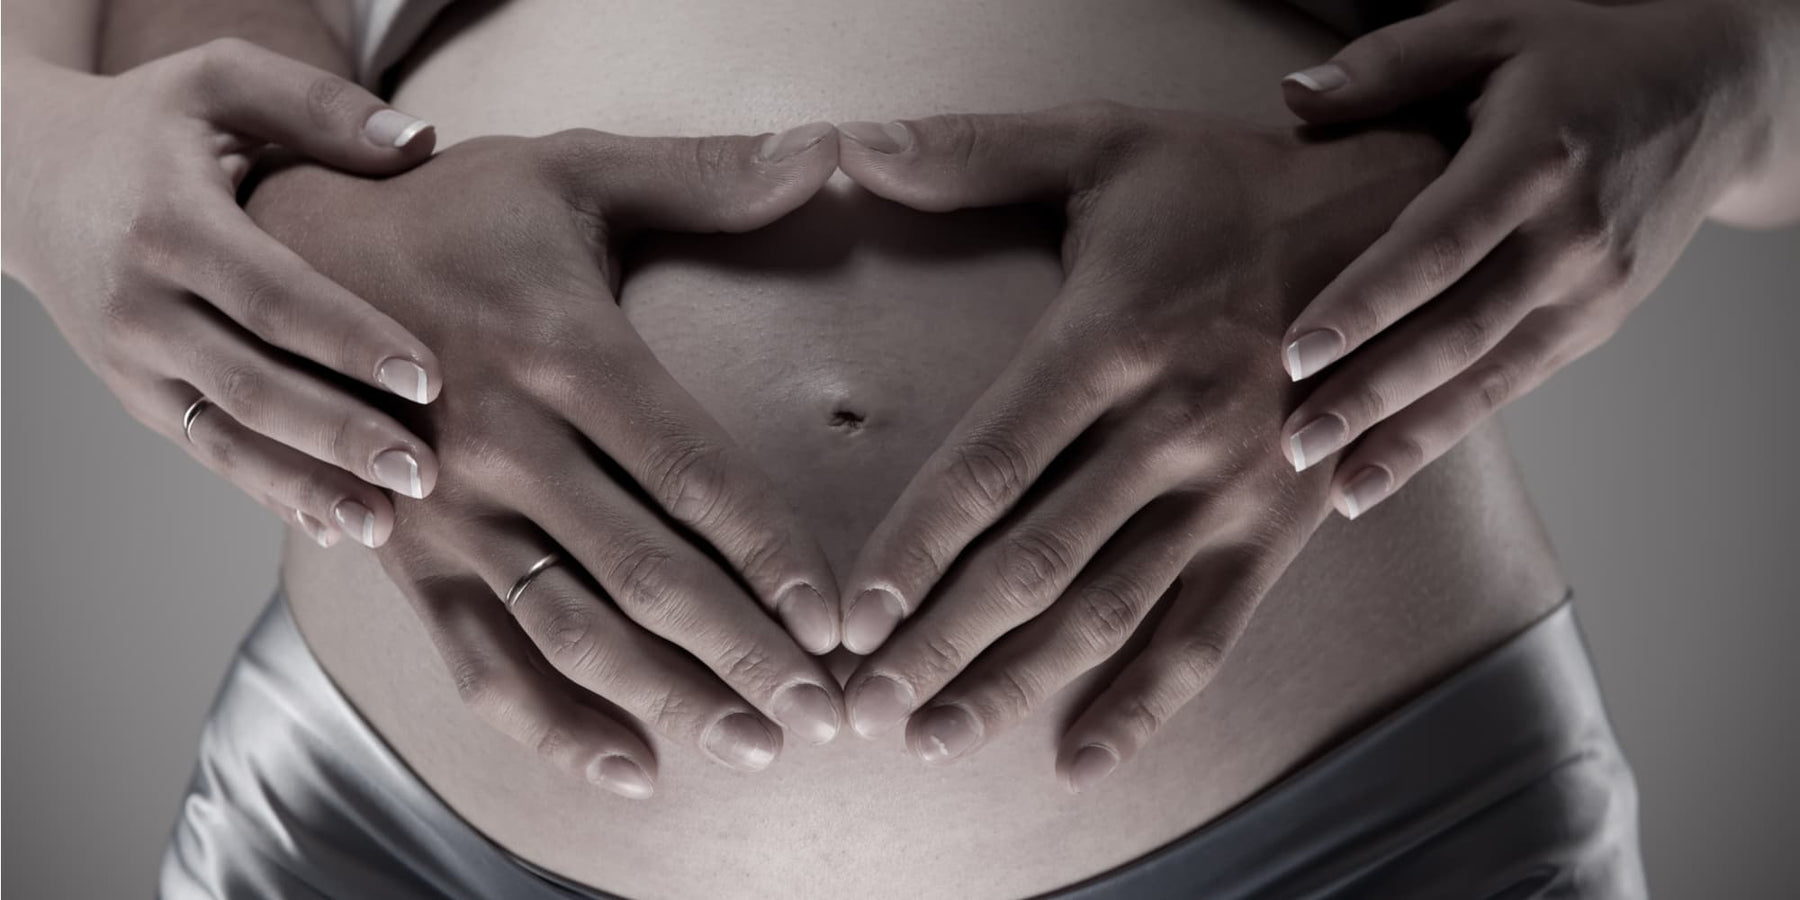 Kan Je Een Vibrator Gebruiken Als Je Zwanger Bent?